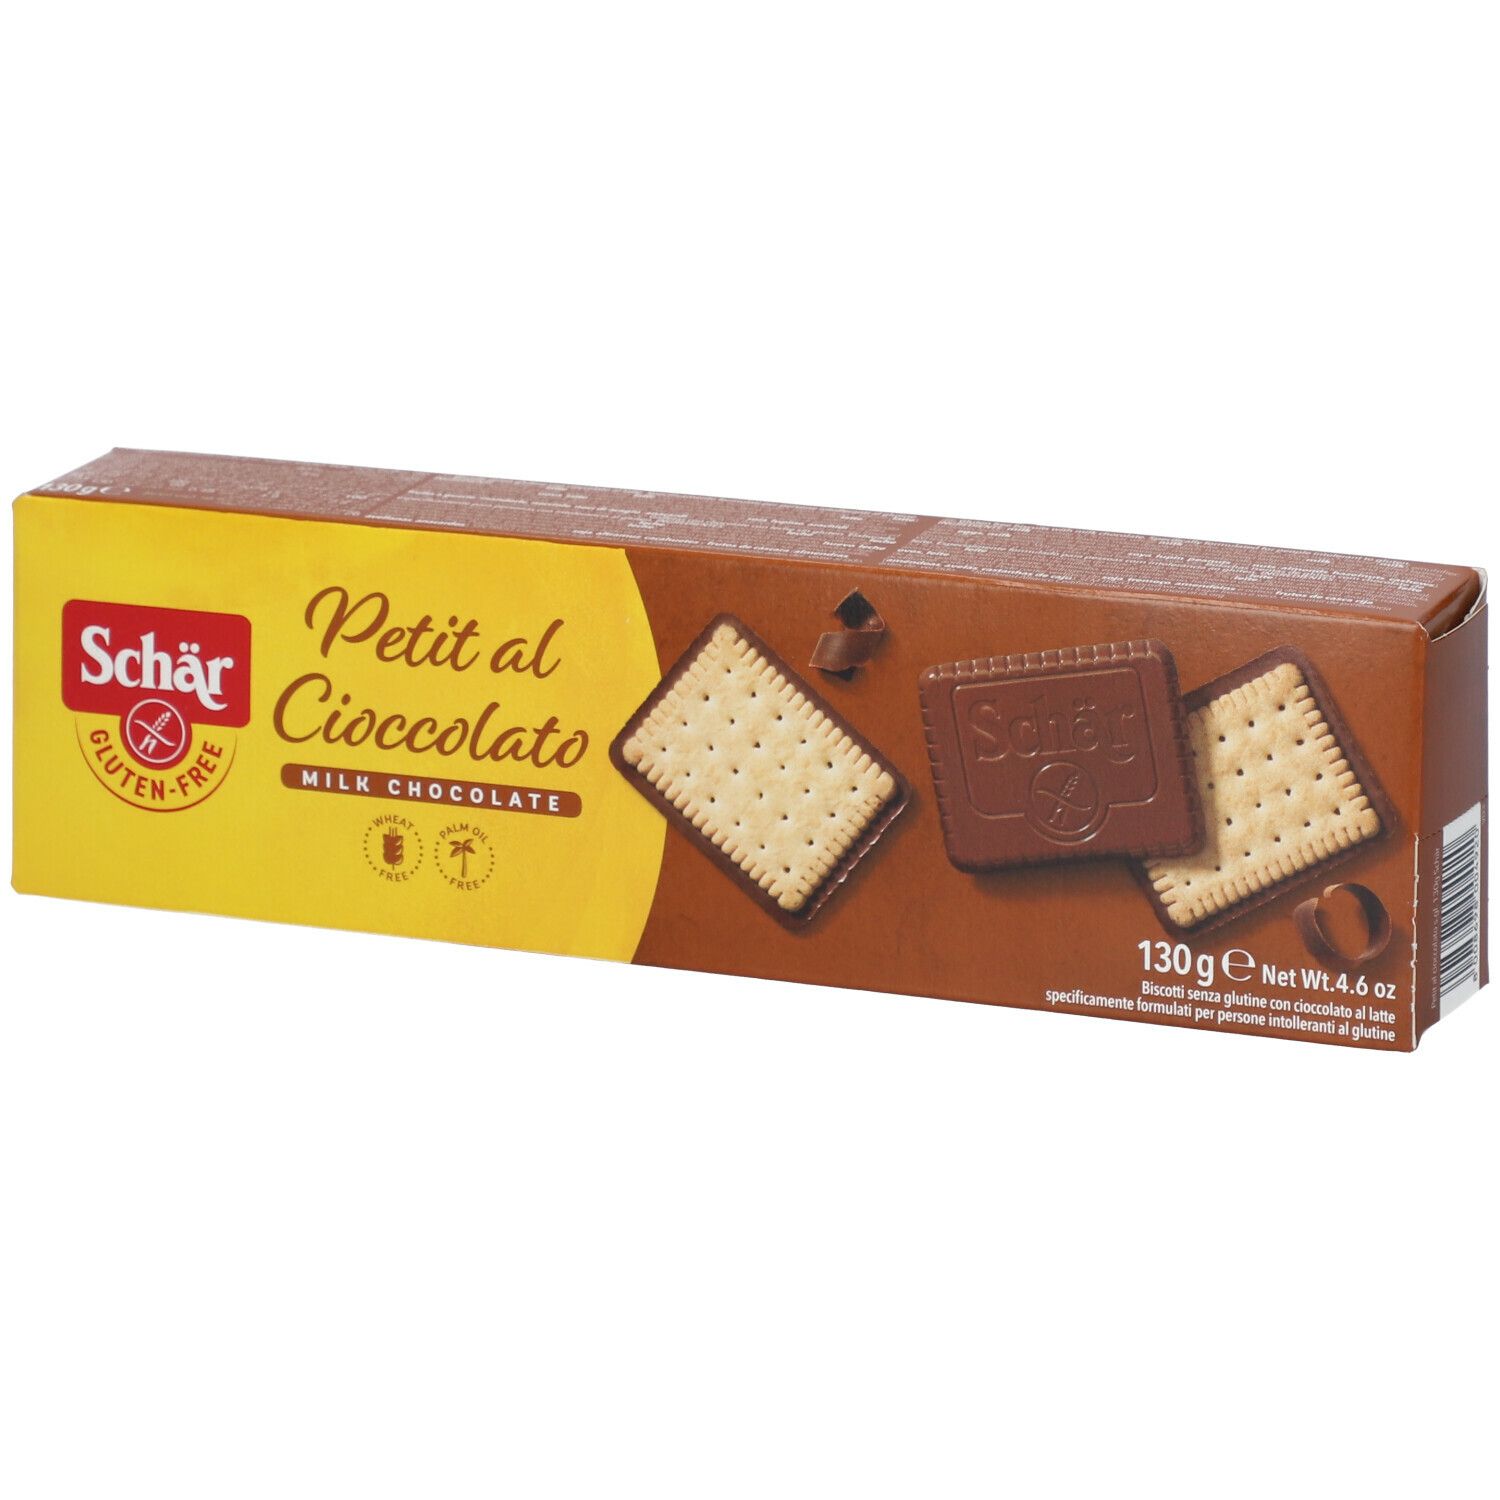 Schar - Biscotti Pepitas Con Pezzi Di Cioccolato Per Celiaci Senza Glutine  200 G